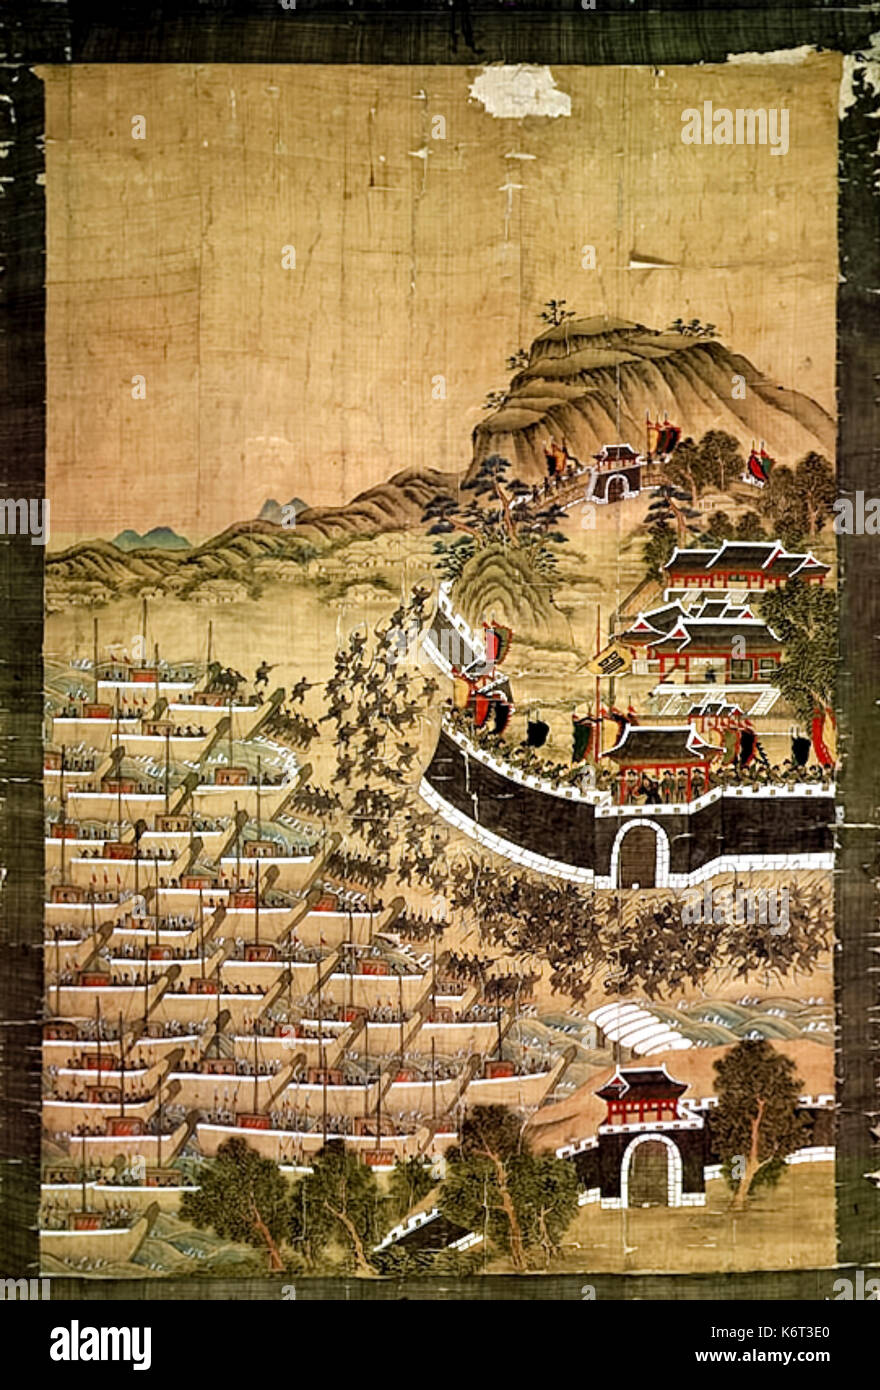 'Siege de Busanjin' peinture sur soie montrant les forces japonaises mise en scène un débarquement amphibie et entourant la forteresse pendant l'invasion japonaise de la Corée en 1592, la première bataille dans la guerre Imjon. Photographie de 1709 par l'artiste peinture sur soie Byeon Bak. Banque D'Images